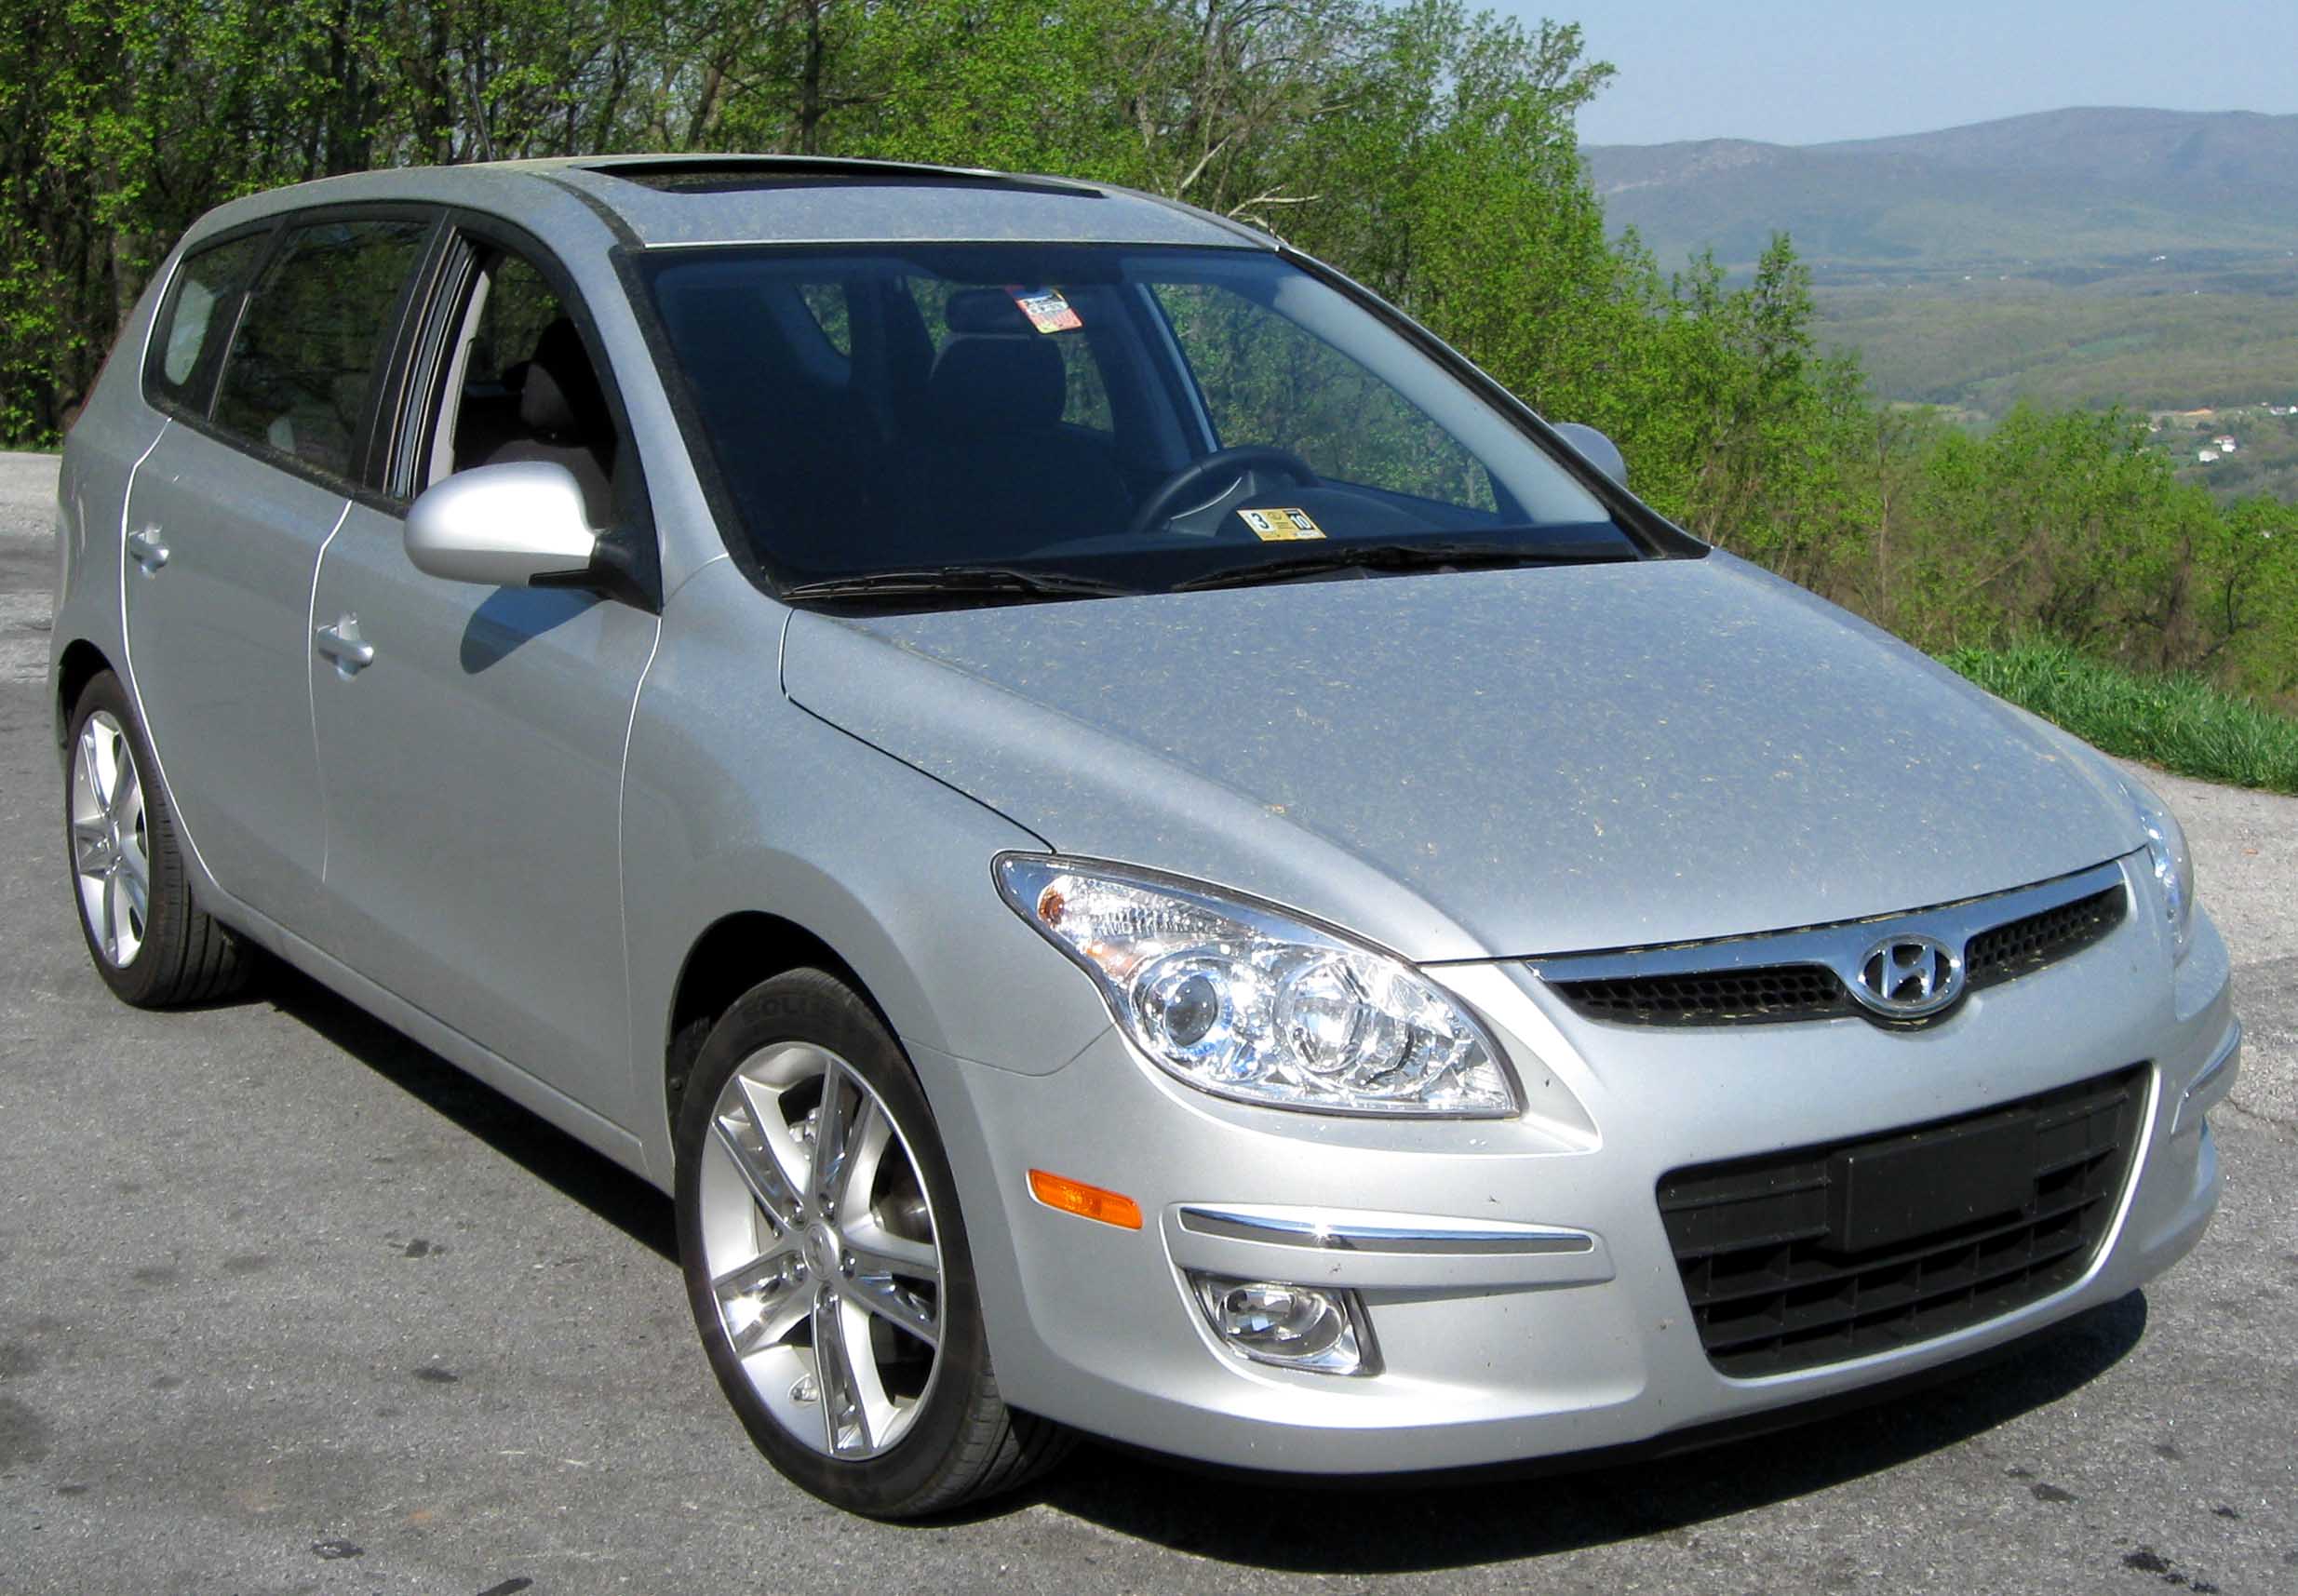 File:2009 Hyundai Elantra Touring front 2.jpg - Wikipedia